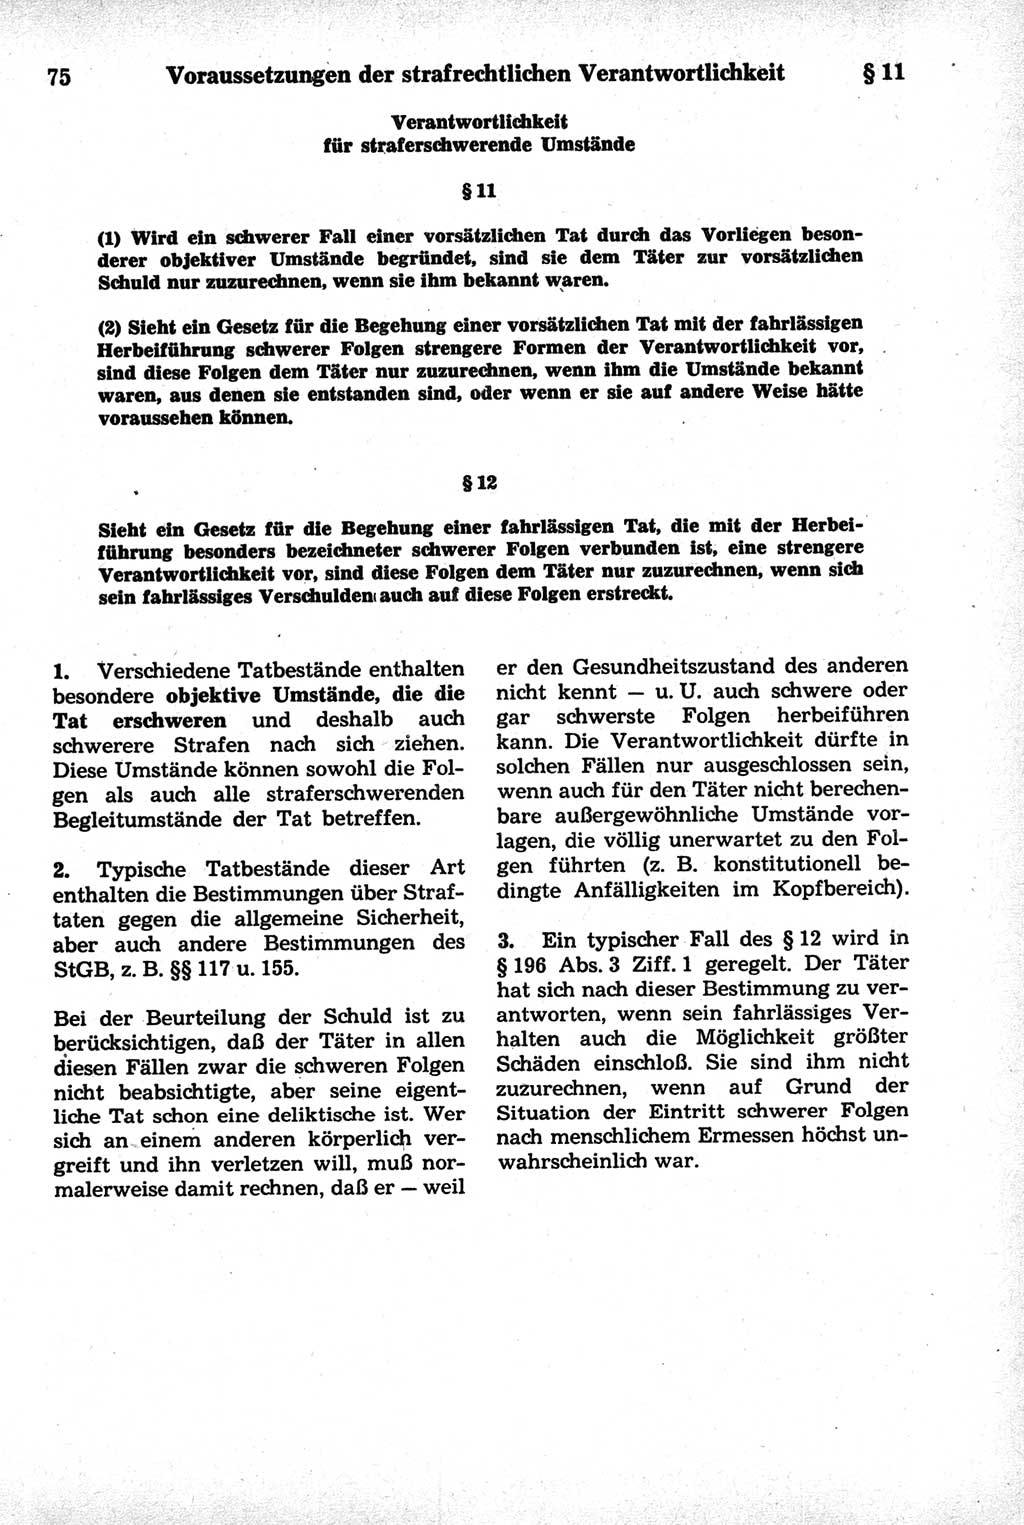 Strafrecht der Deutschen Demokratischen Republik (DDR), Kommentar zum Strafgesetzbuch (StGB) 1981, Seite 75 (Strafr. DDR Komm. StGB 1981, S. 75)